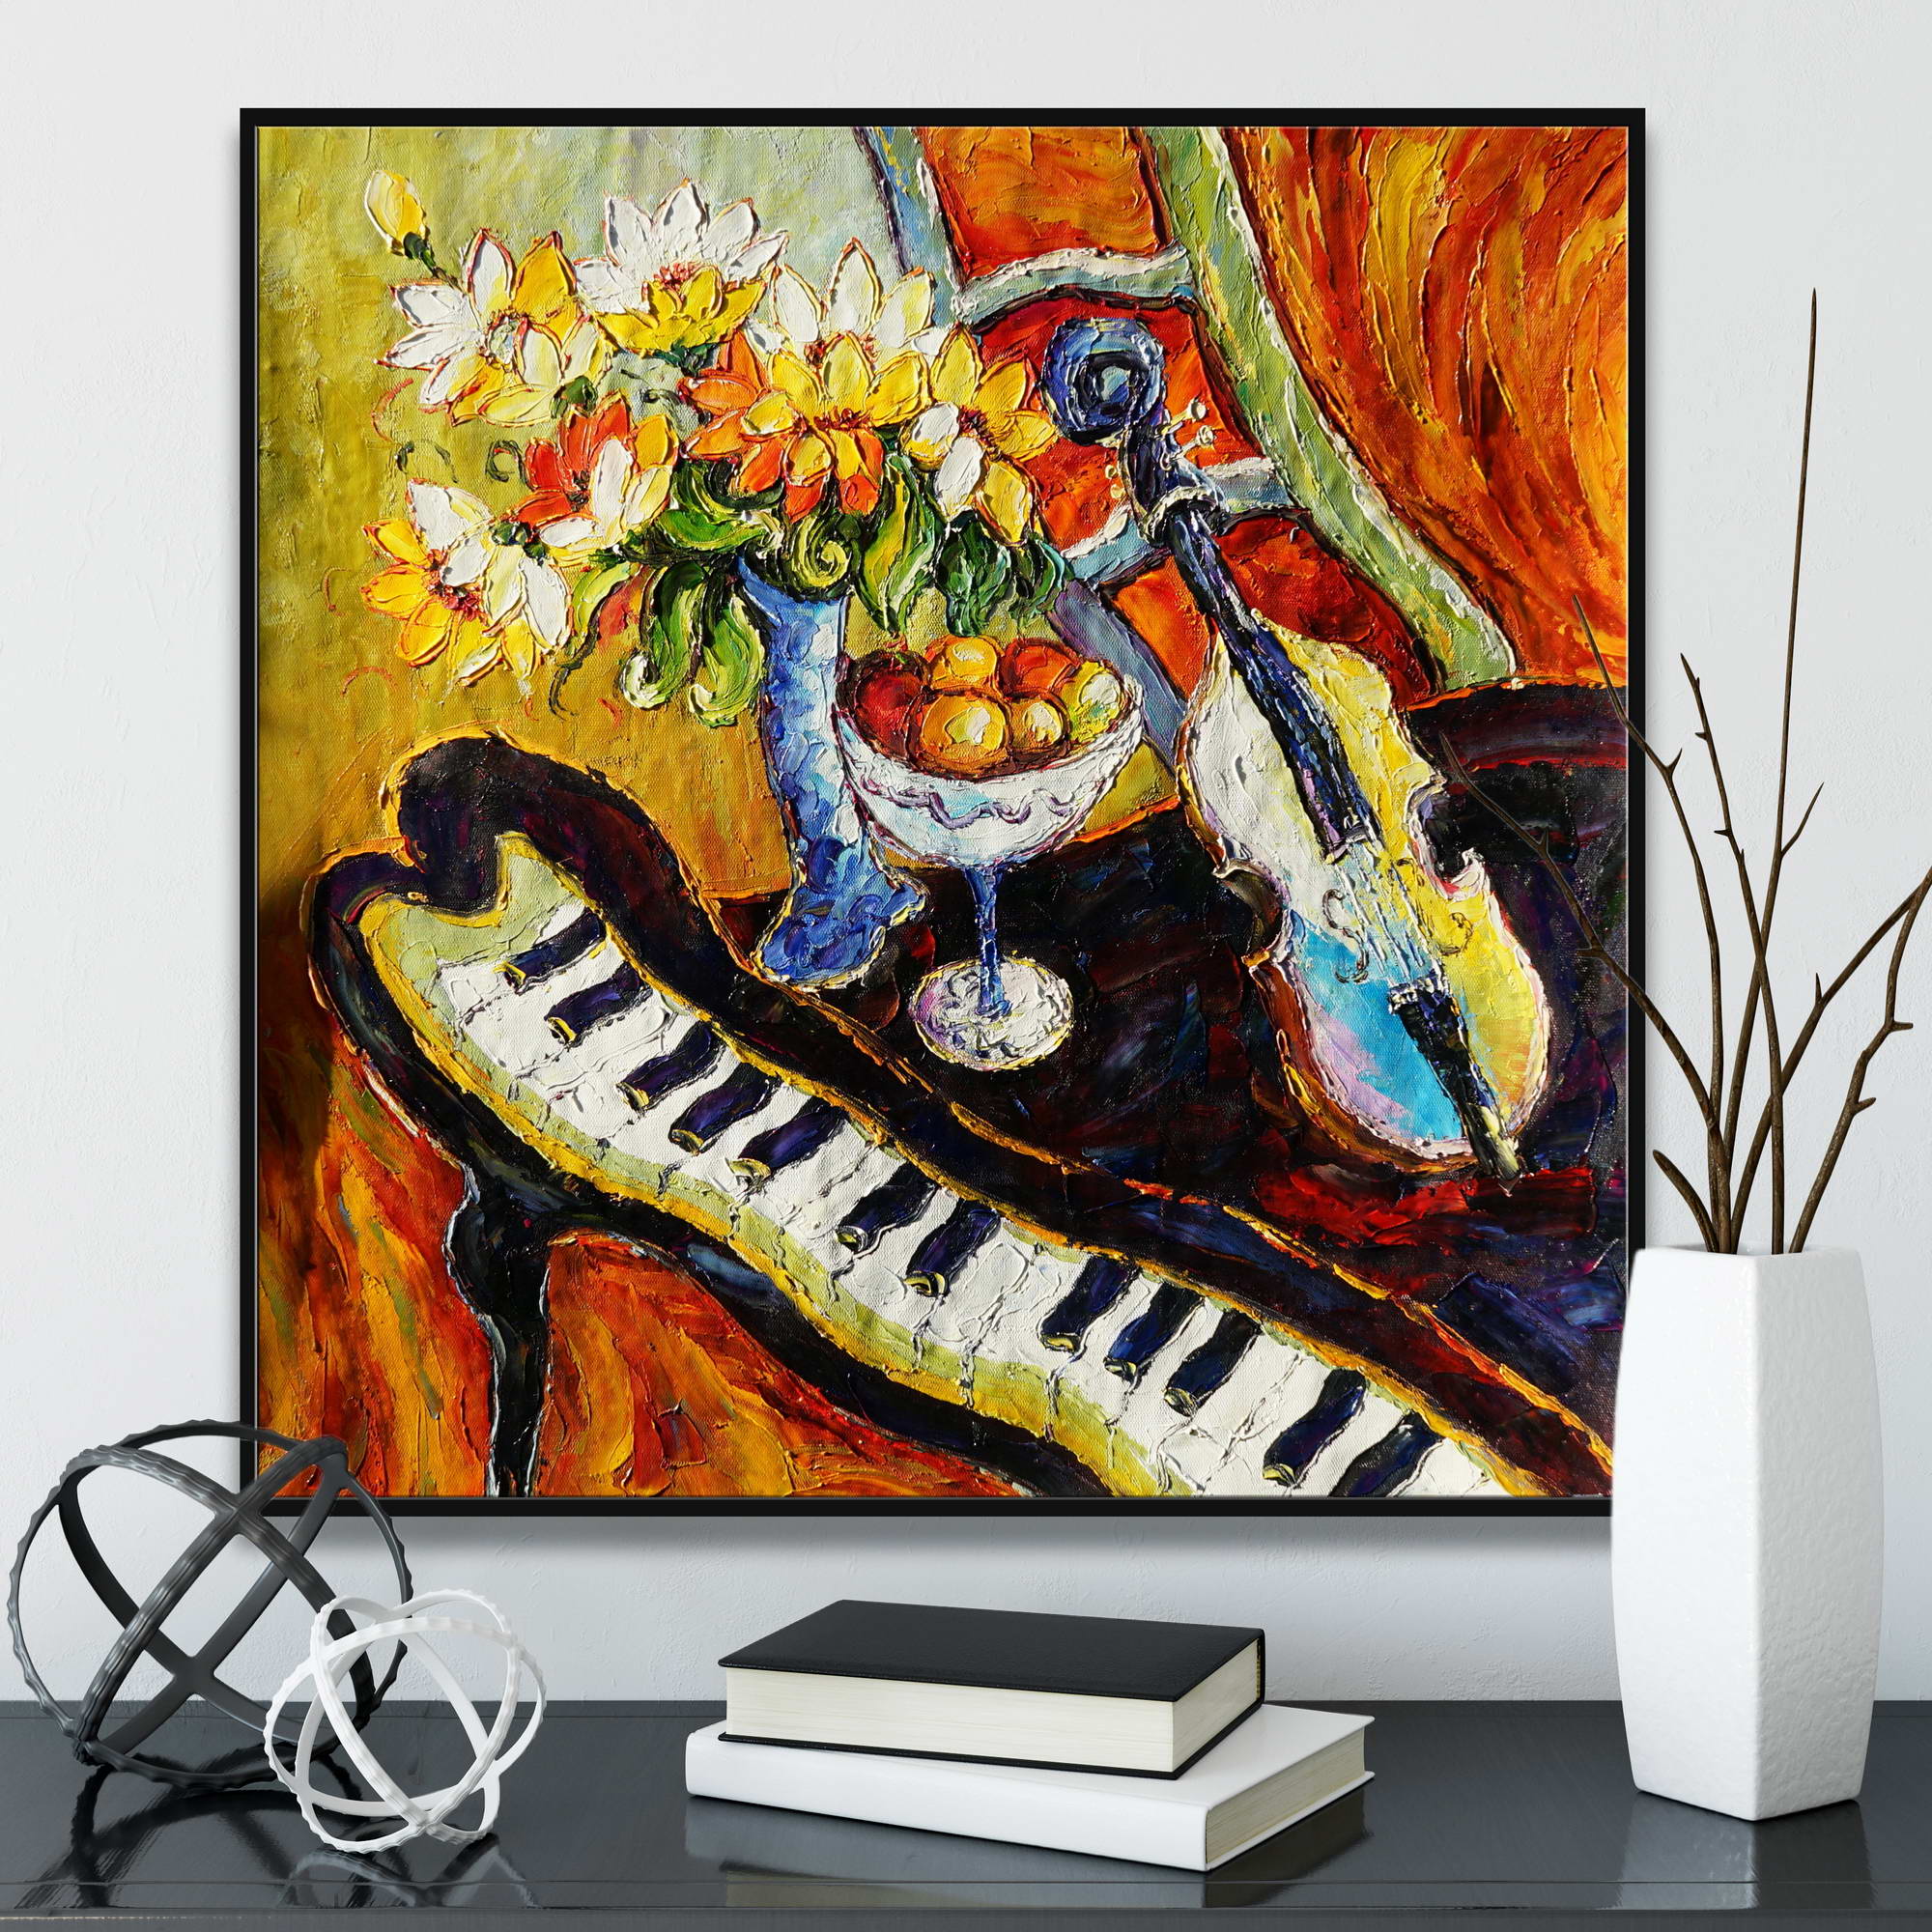 Quadro con natura morta espressionista con fiori, frutta e strumenti musicali.